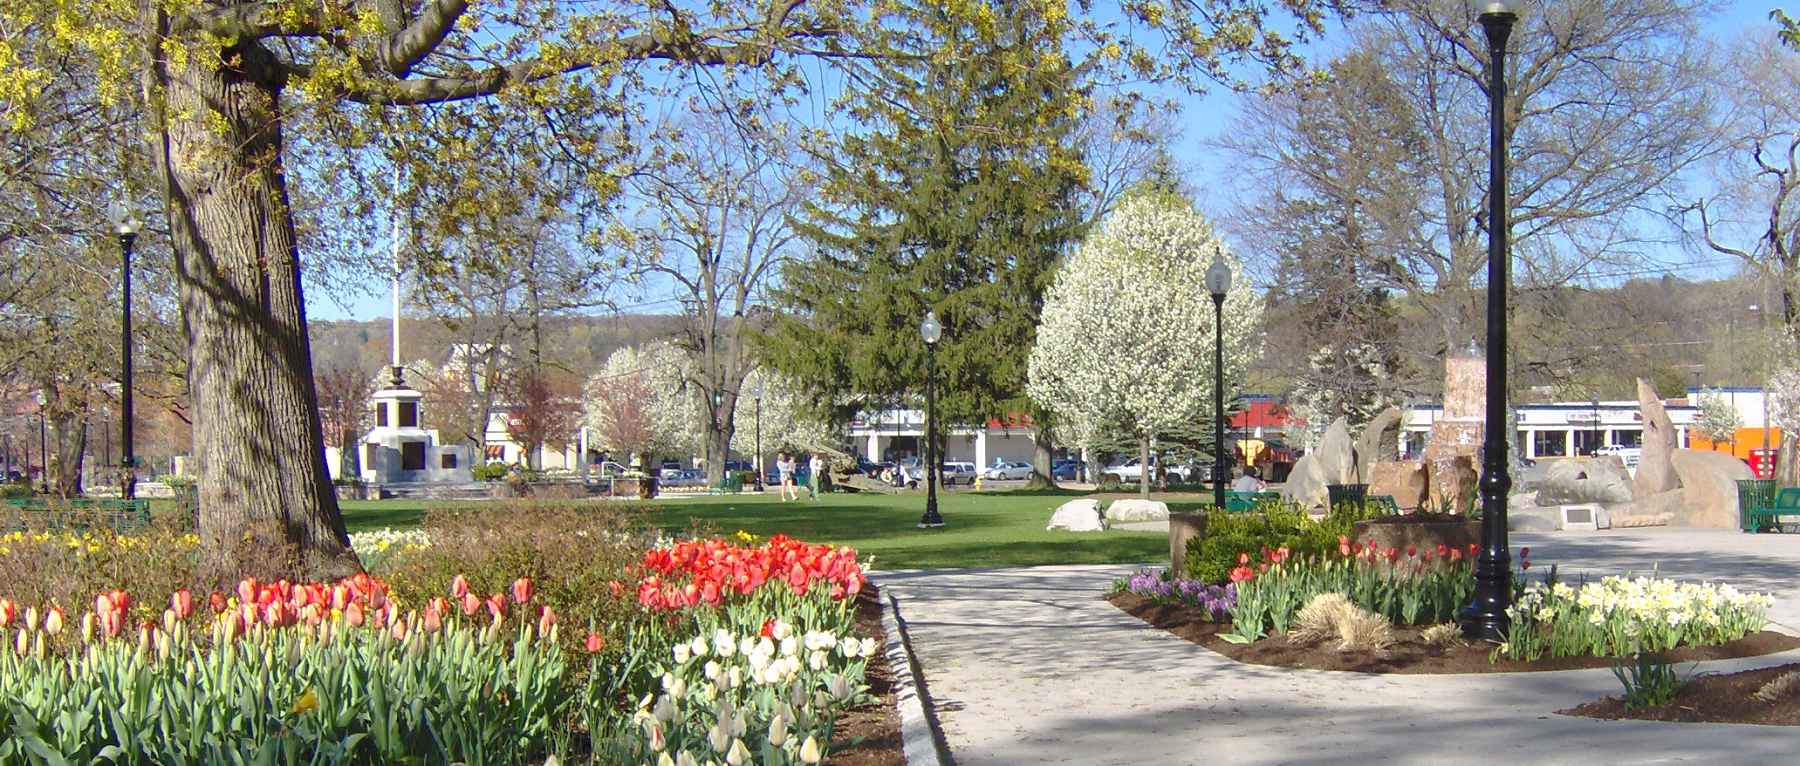 Spring at Coe Memorial Park - Torrington CT